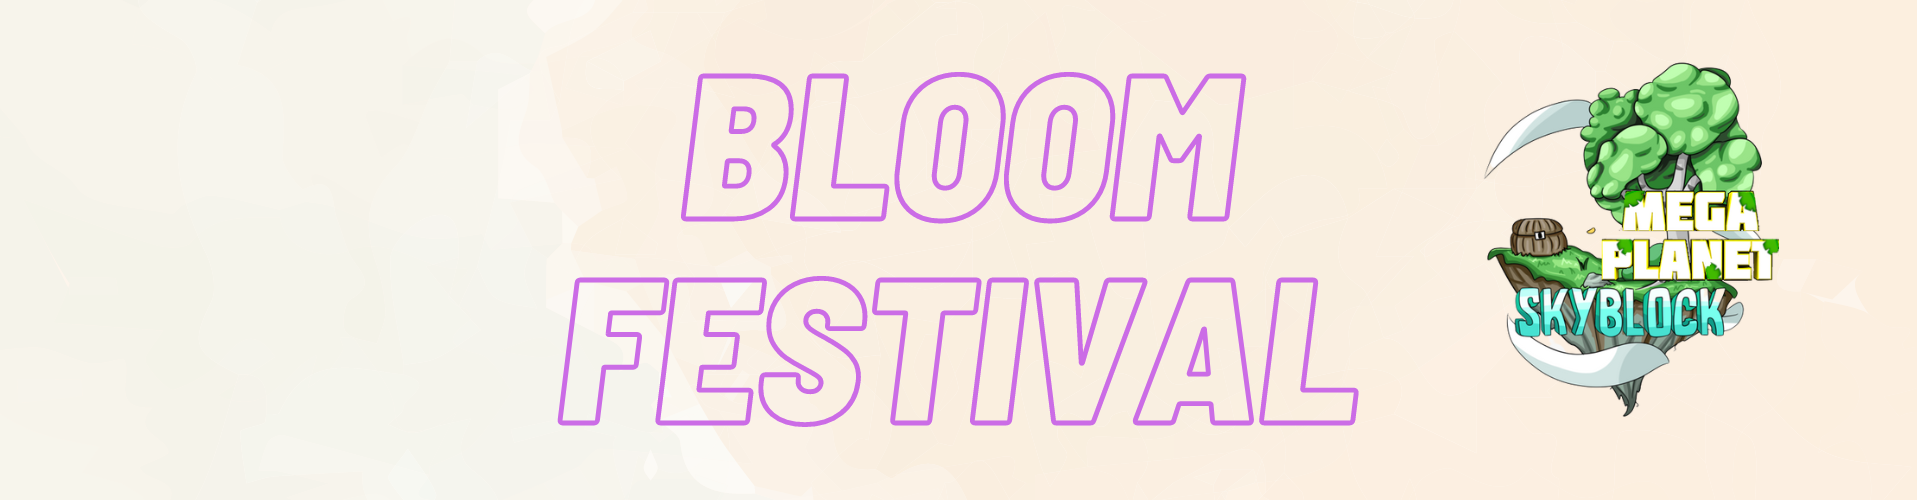 Bloom festival (1).png